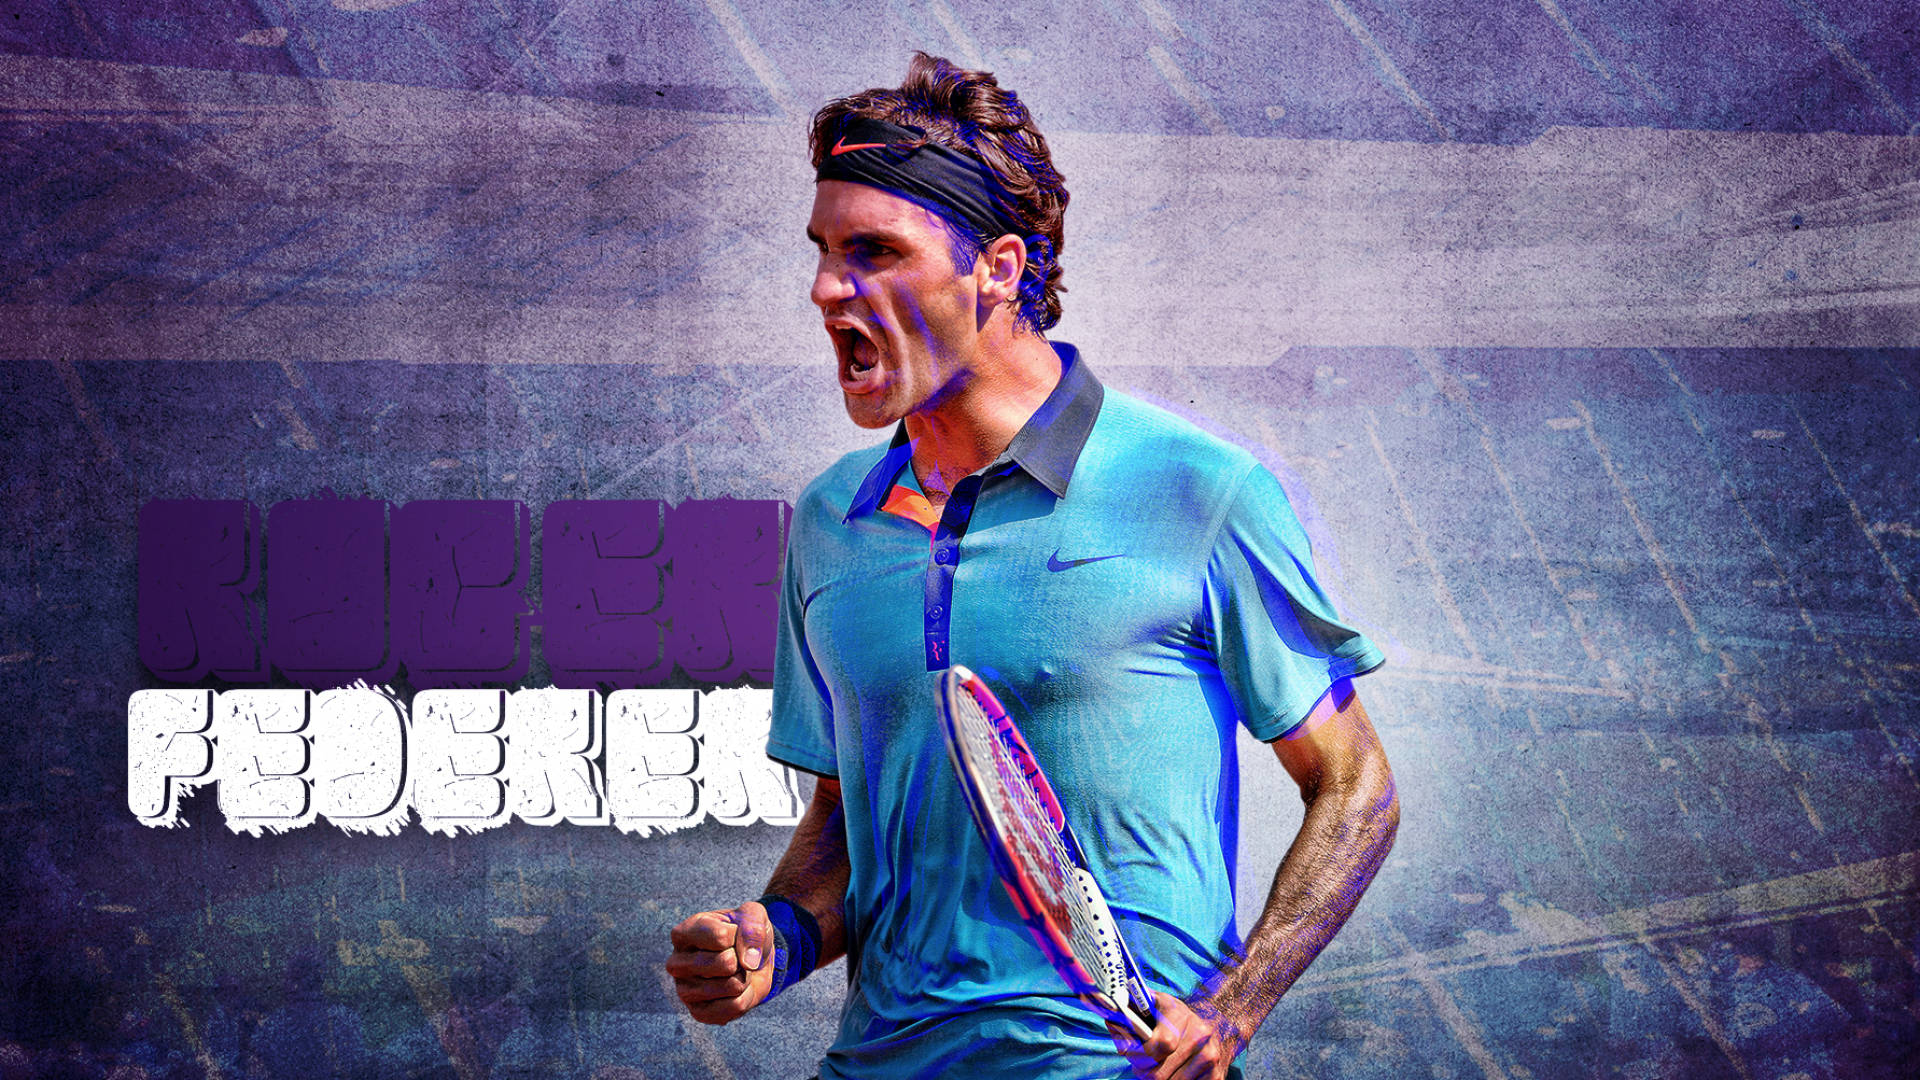 Roger Federer Tennis Violet Art